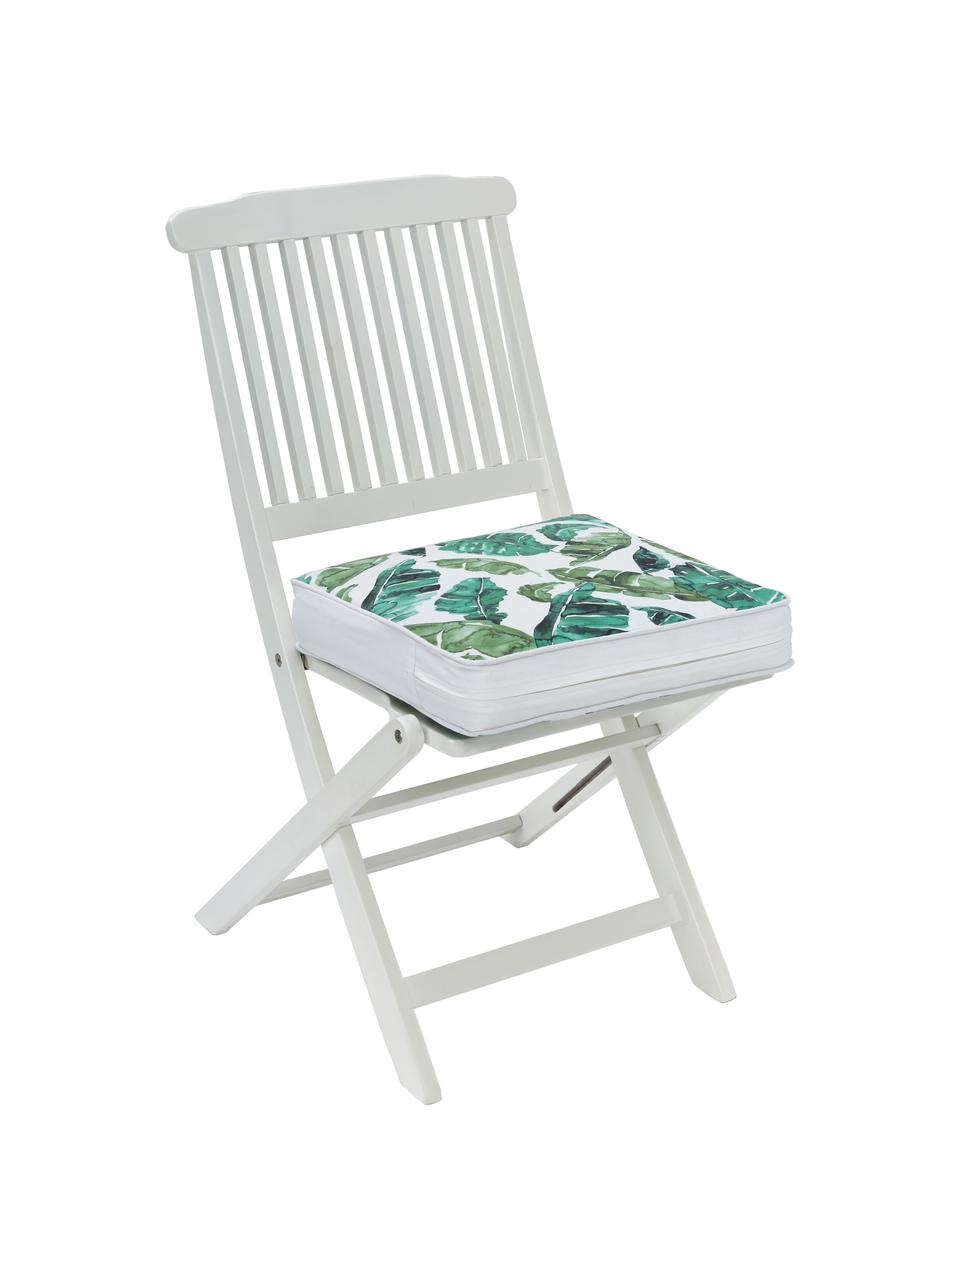 Podsedák na židli Shade, Zelená, bílá, Š 40 cm, D 40 cm